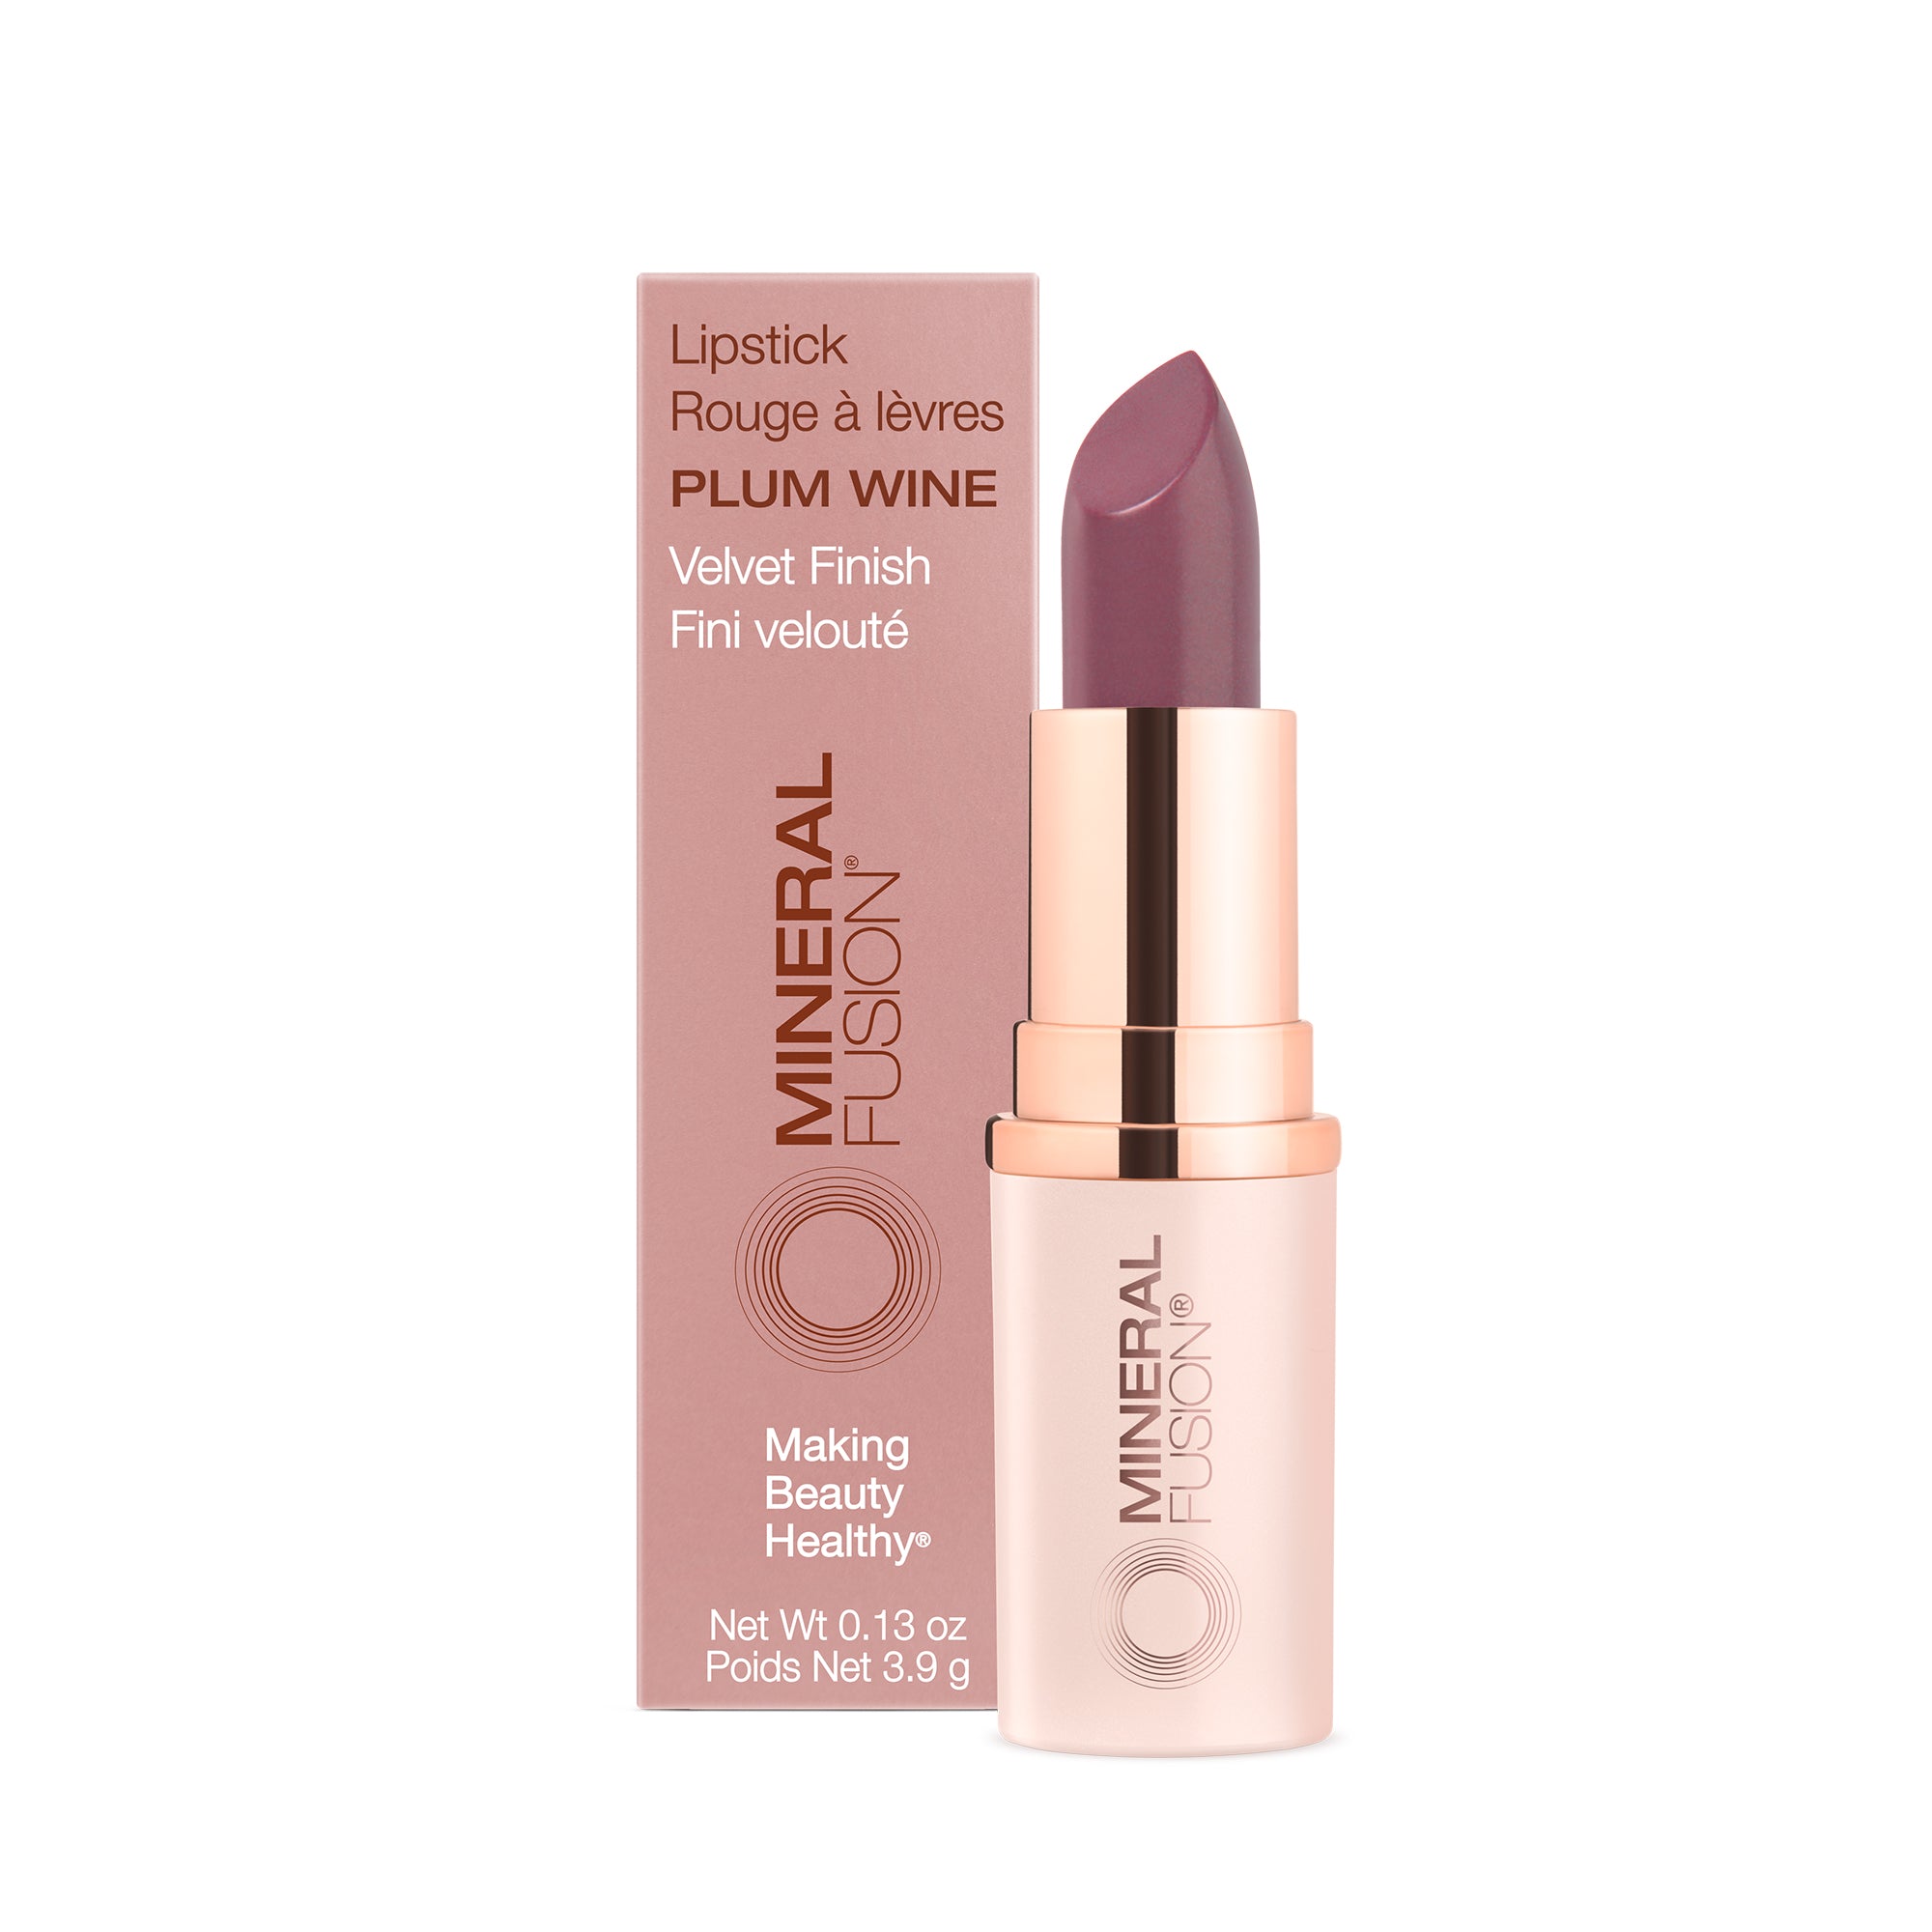 NEW Lipstick - Mineral Fusion